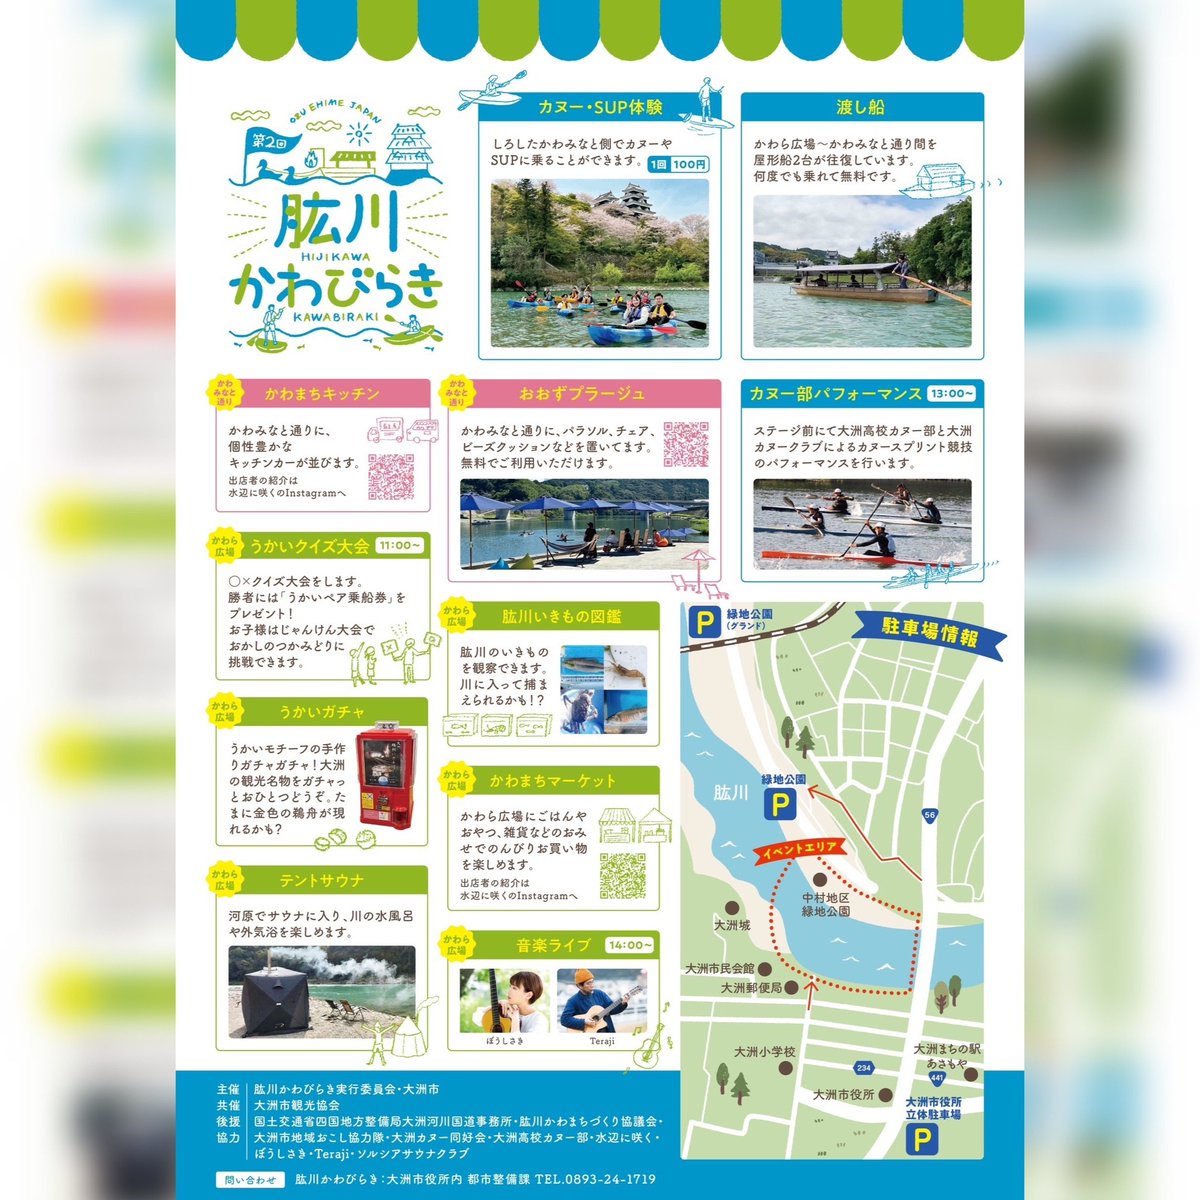 次の日曜日は愛媛県大洲市にて開催の「肱川かわびらき」に出店です。初南予です。 こちらのイベントは会場が川を挟んで2つに分かれていて、無料の渡し船で行き来できるようです！めっちゃ楽しそう✨ #オトンノアトリエ はかわら広場の方にいます🐧